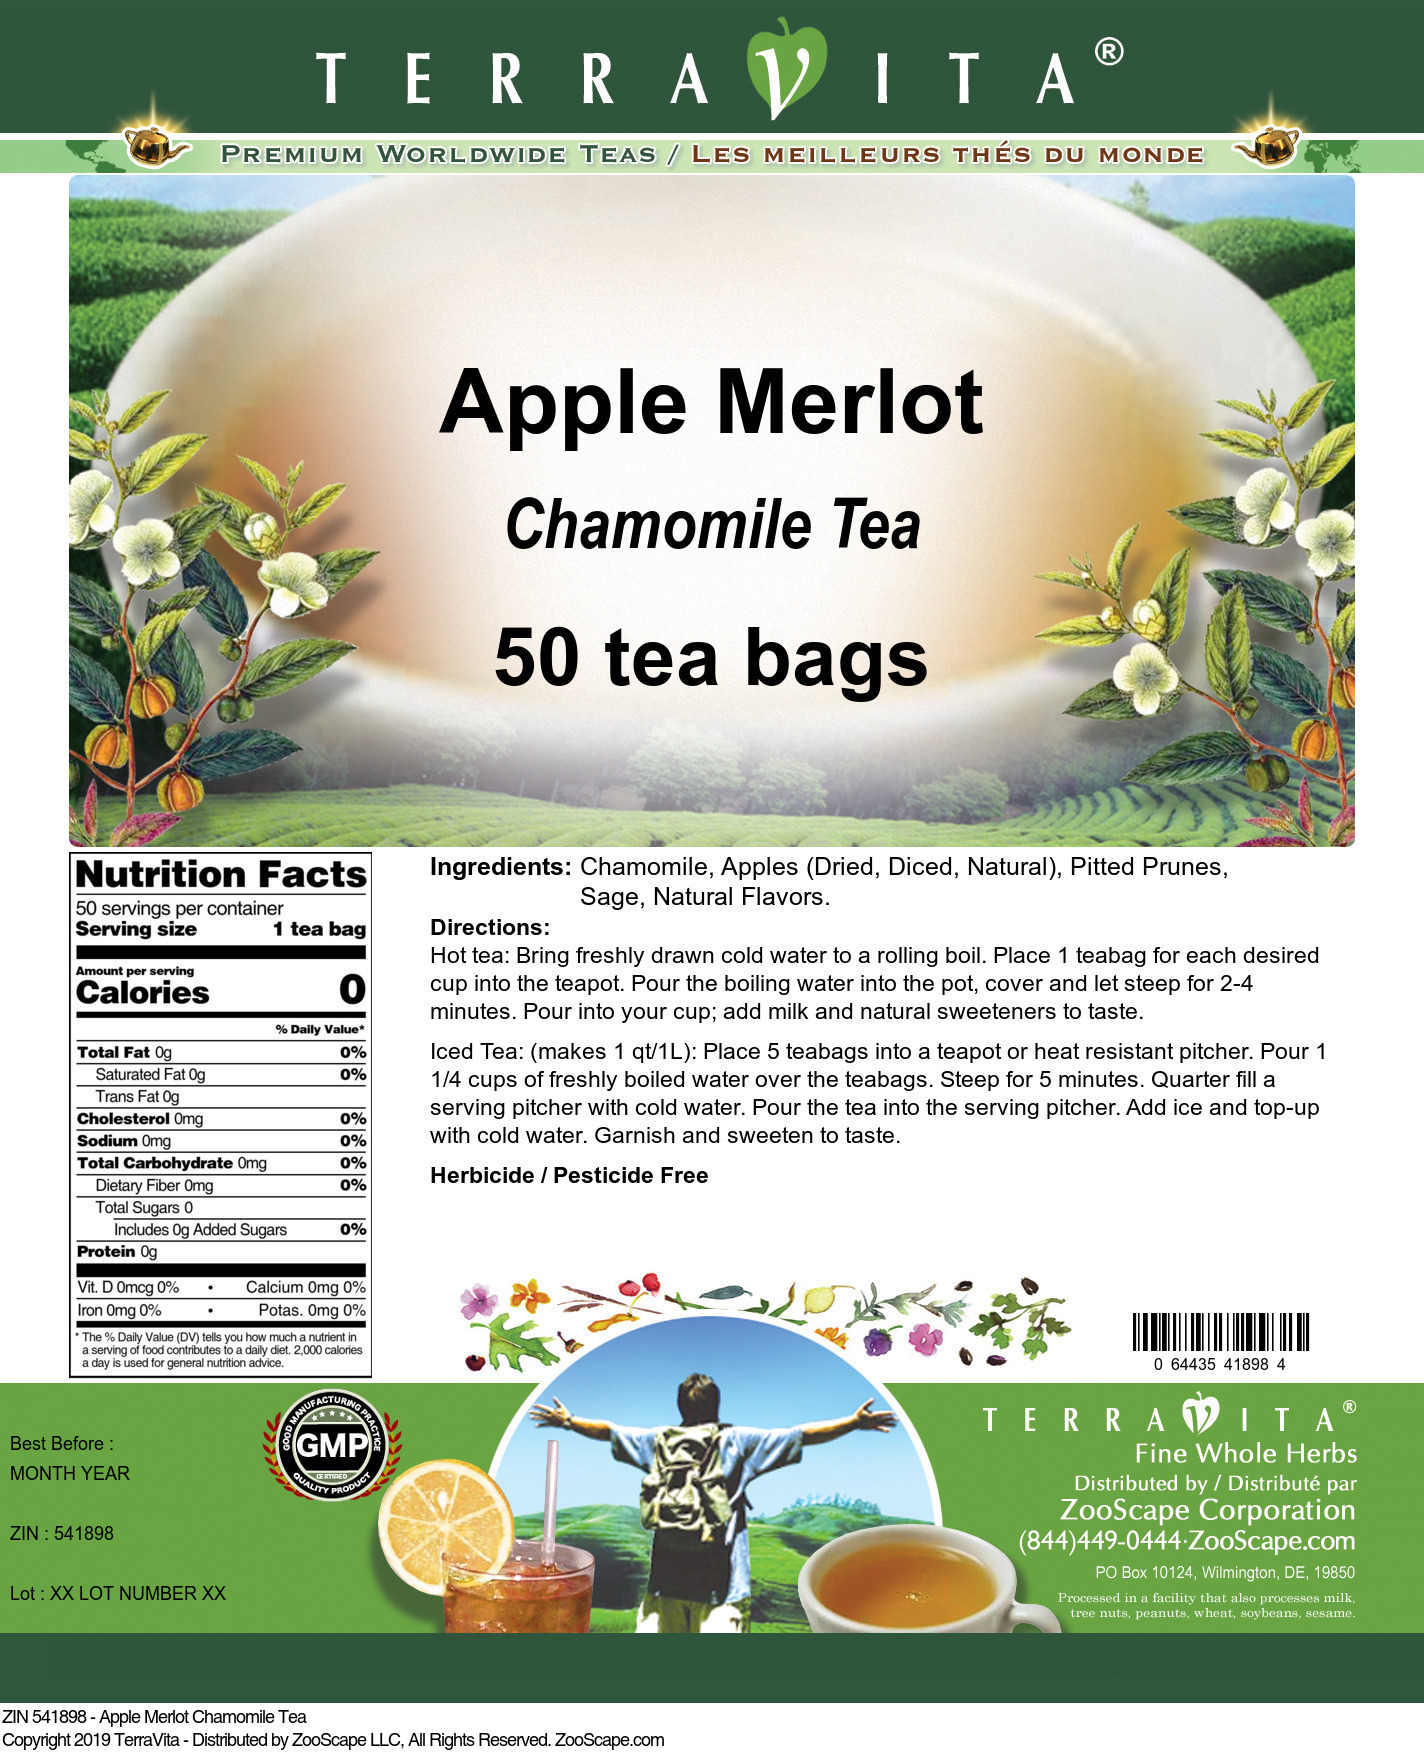 Apple Merlot Chamomile Tea - Label